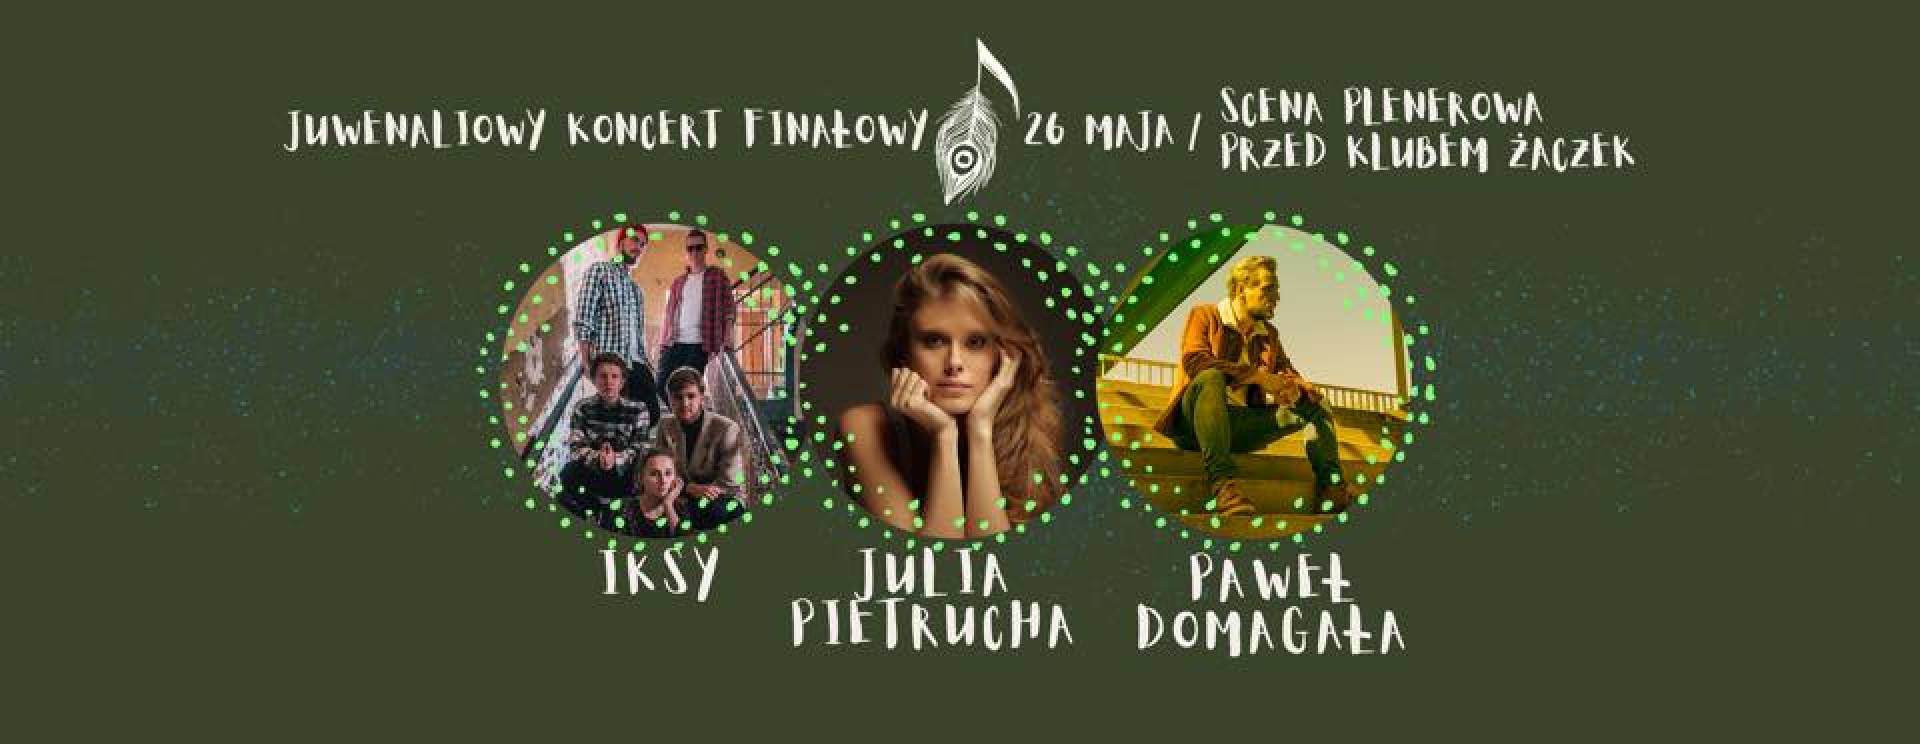 Juwenaliowy Koncert Finałowy:Paweł Domagała,Julia Pietrucha,IKSY